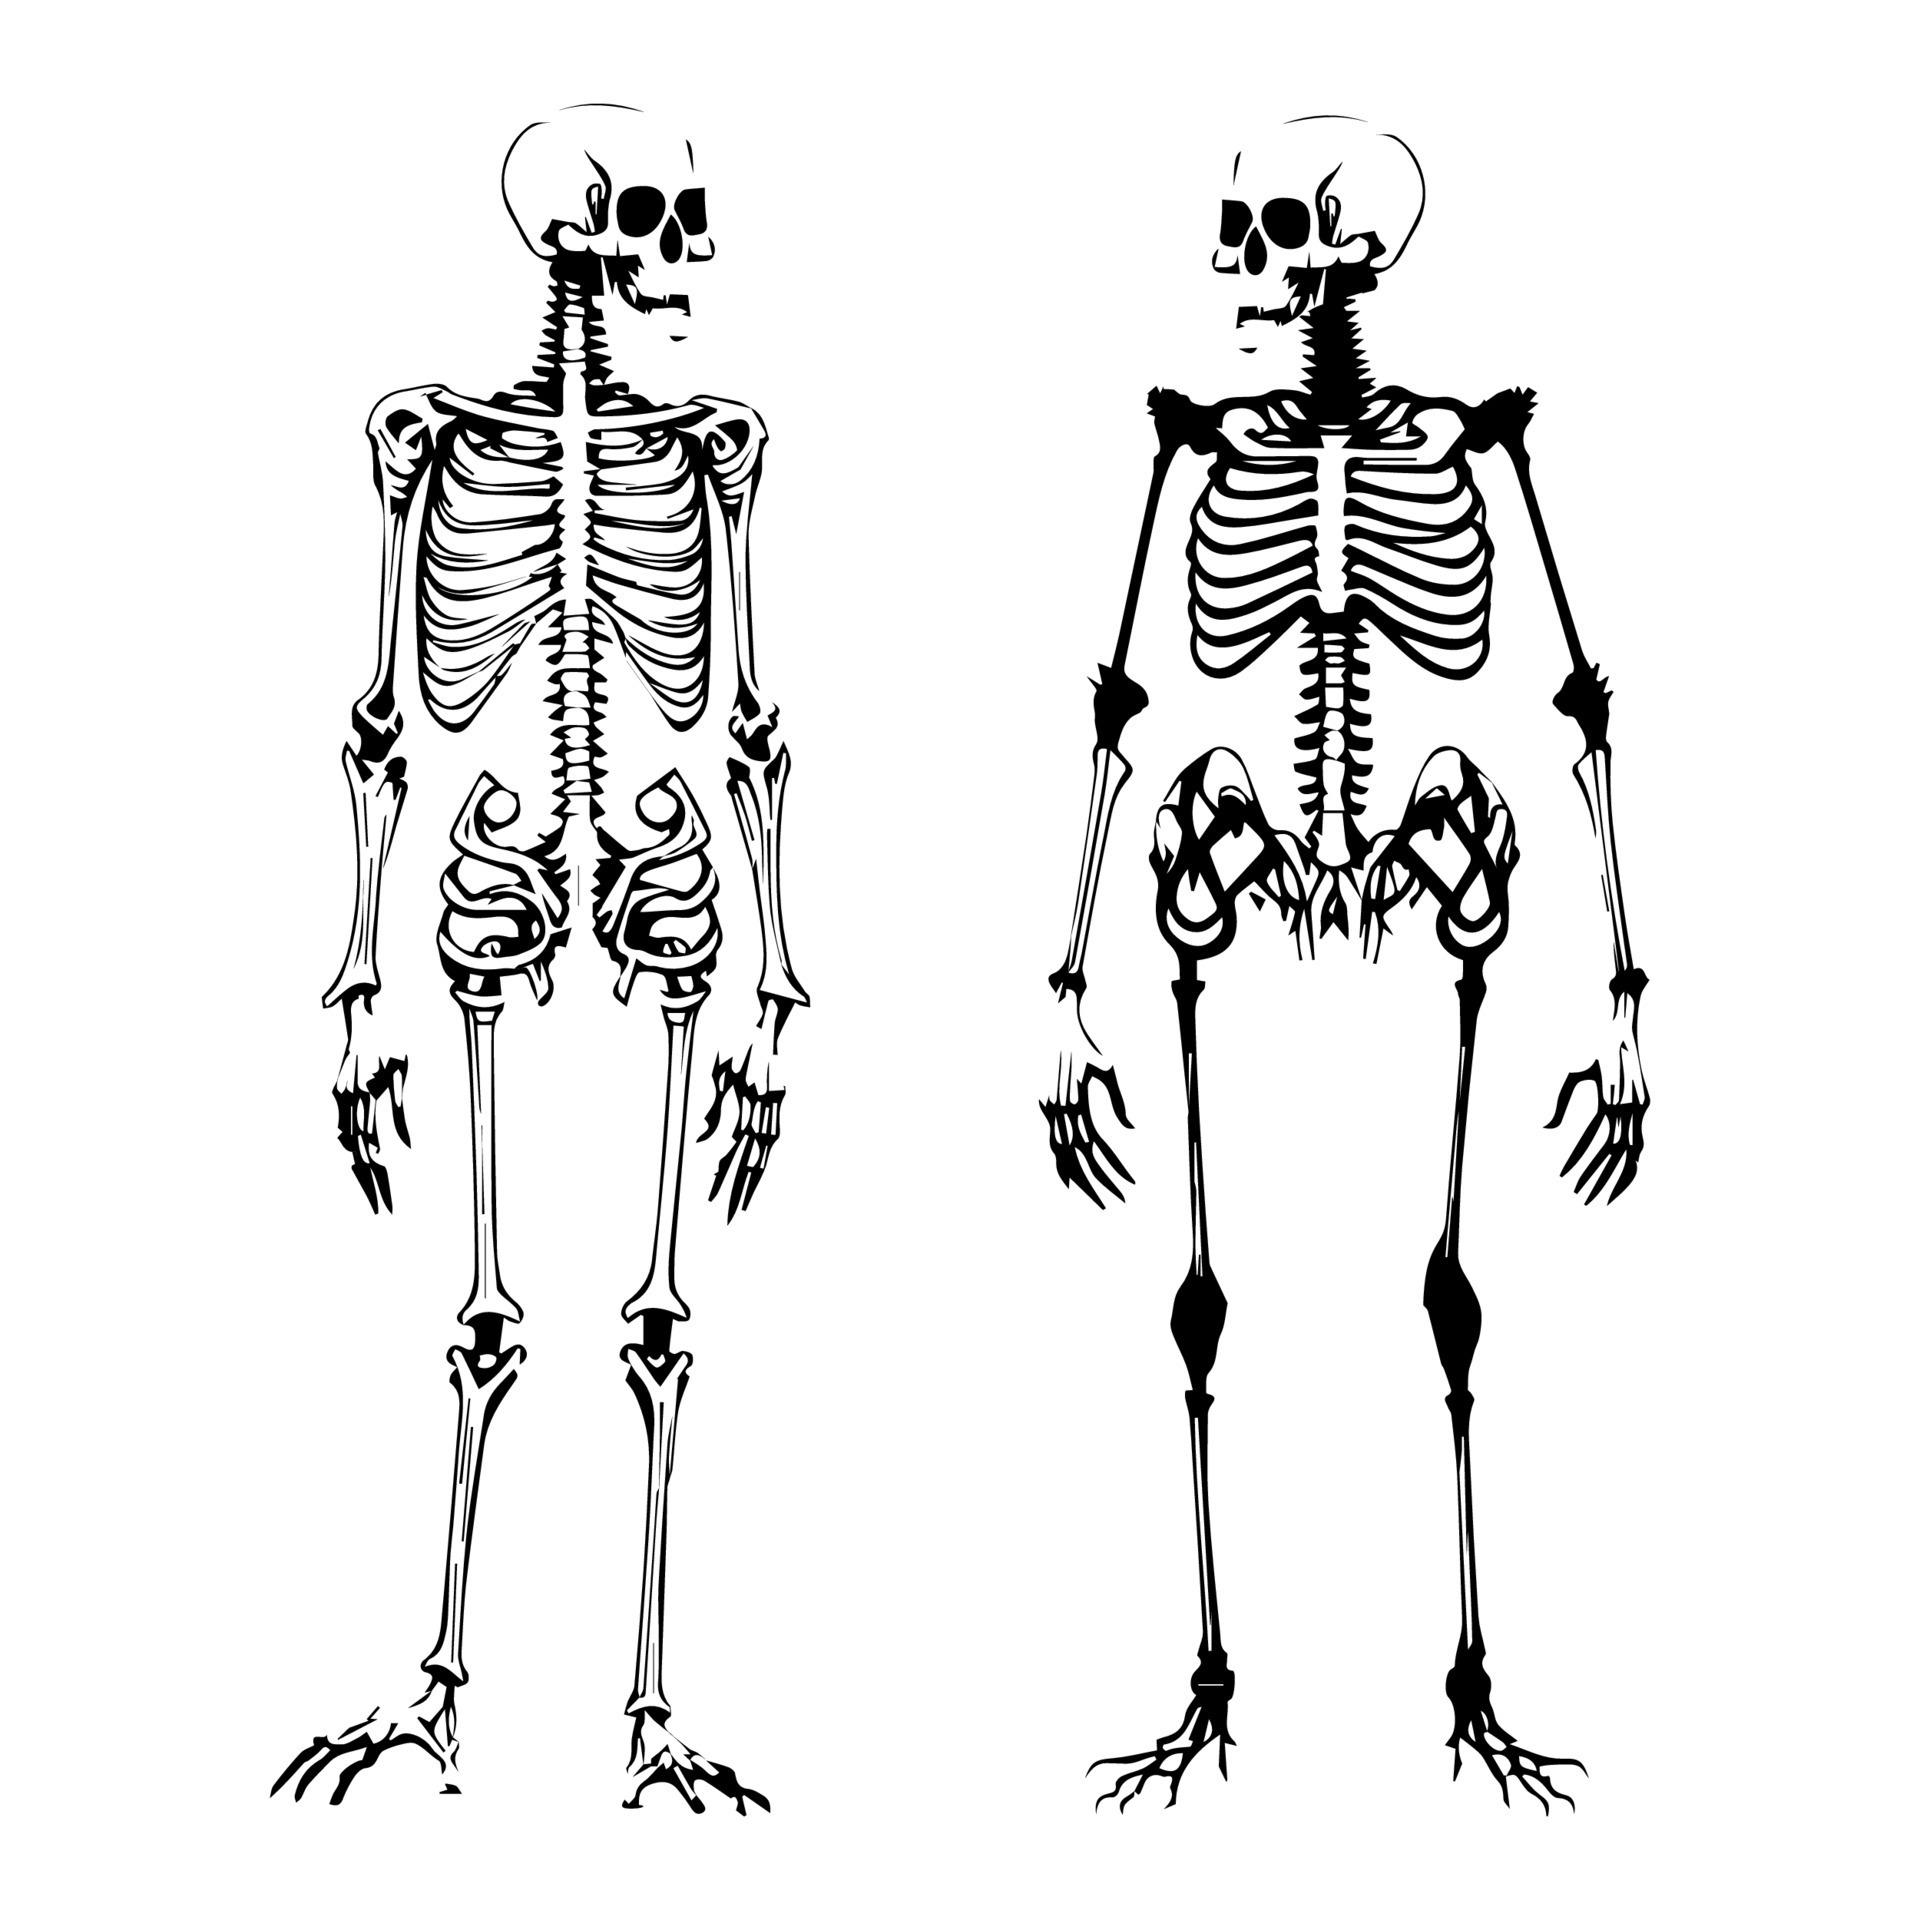 Sketch Human Biology Skeleton System Diagram 27566576 Vector Art